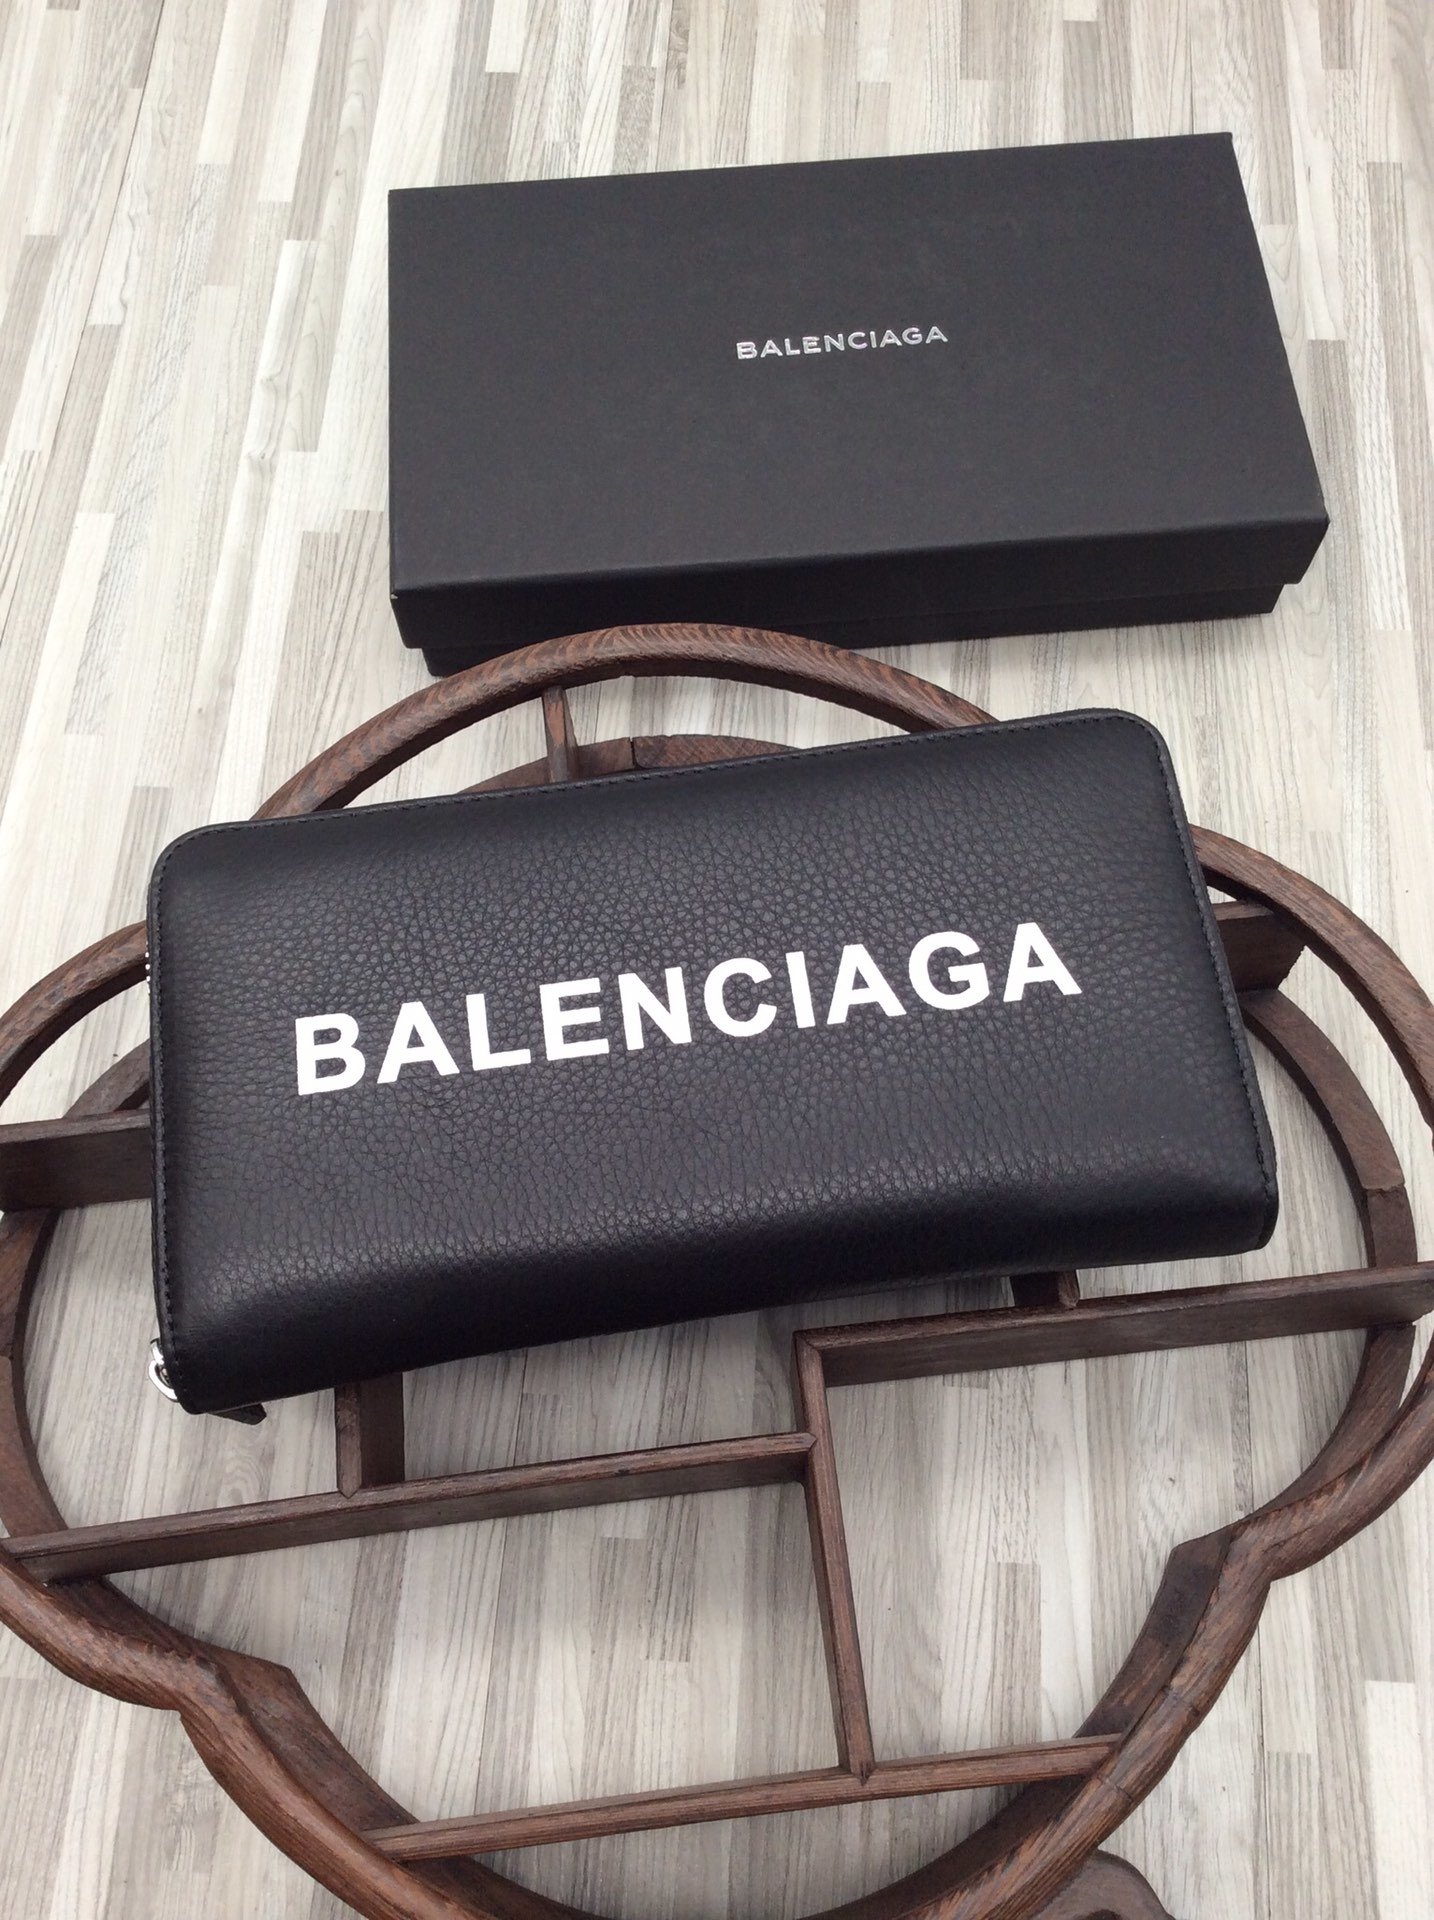 スーパーコピー後払い国内発送 Balenciaga バレンシアガ 長財布 実物の写真 N品代引き対応送料無料安全必ず届く信用できるサイト